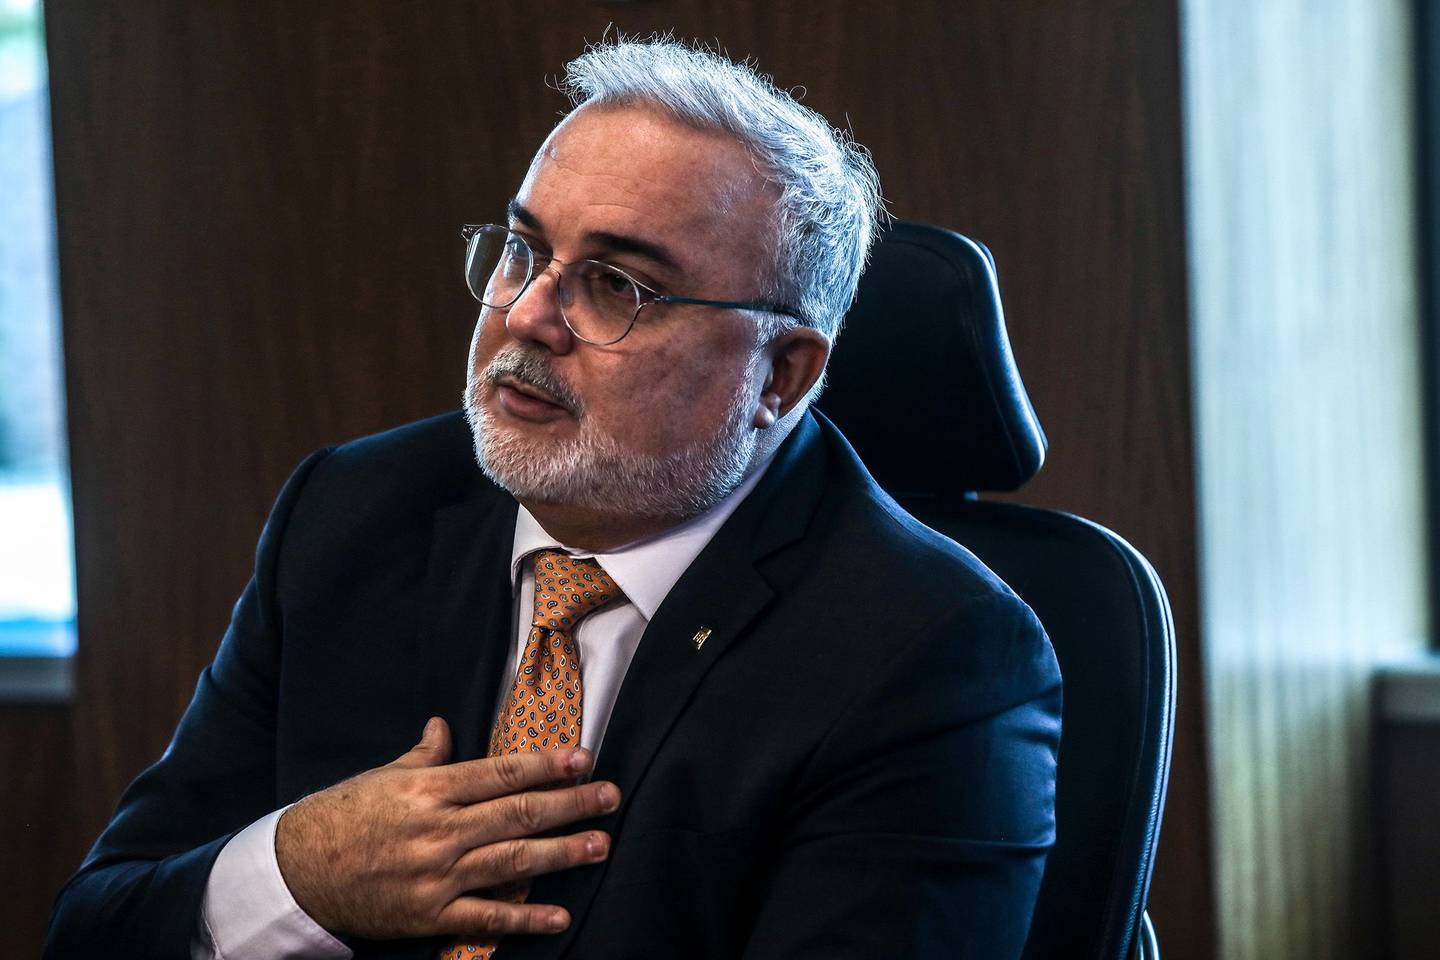 Jean Paul Prates, presidente ejecutivo de Petroleo Brasileiro SA (Petrobras), habla durante una entrevista en la sede de la compañía en Río de Janeiro, Brasil, el jueves 23 de marzo de 2023. Fotógrafo: Dado Galdieri/Bloomberg